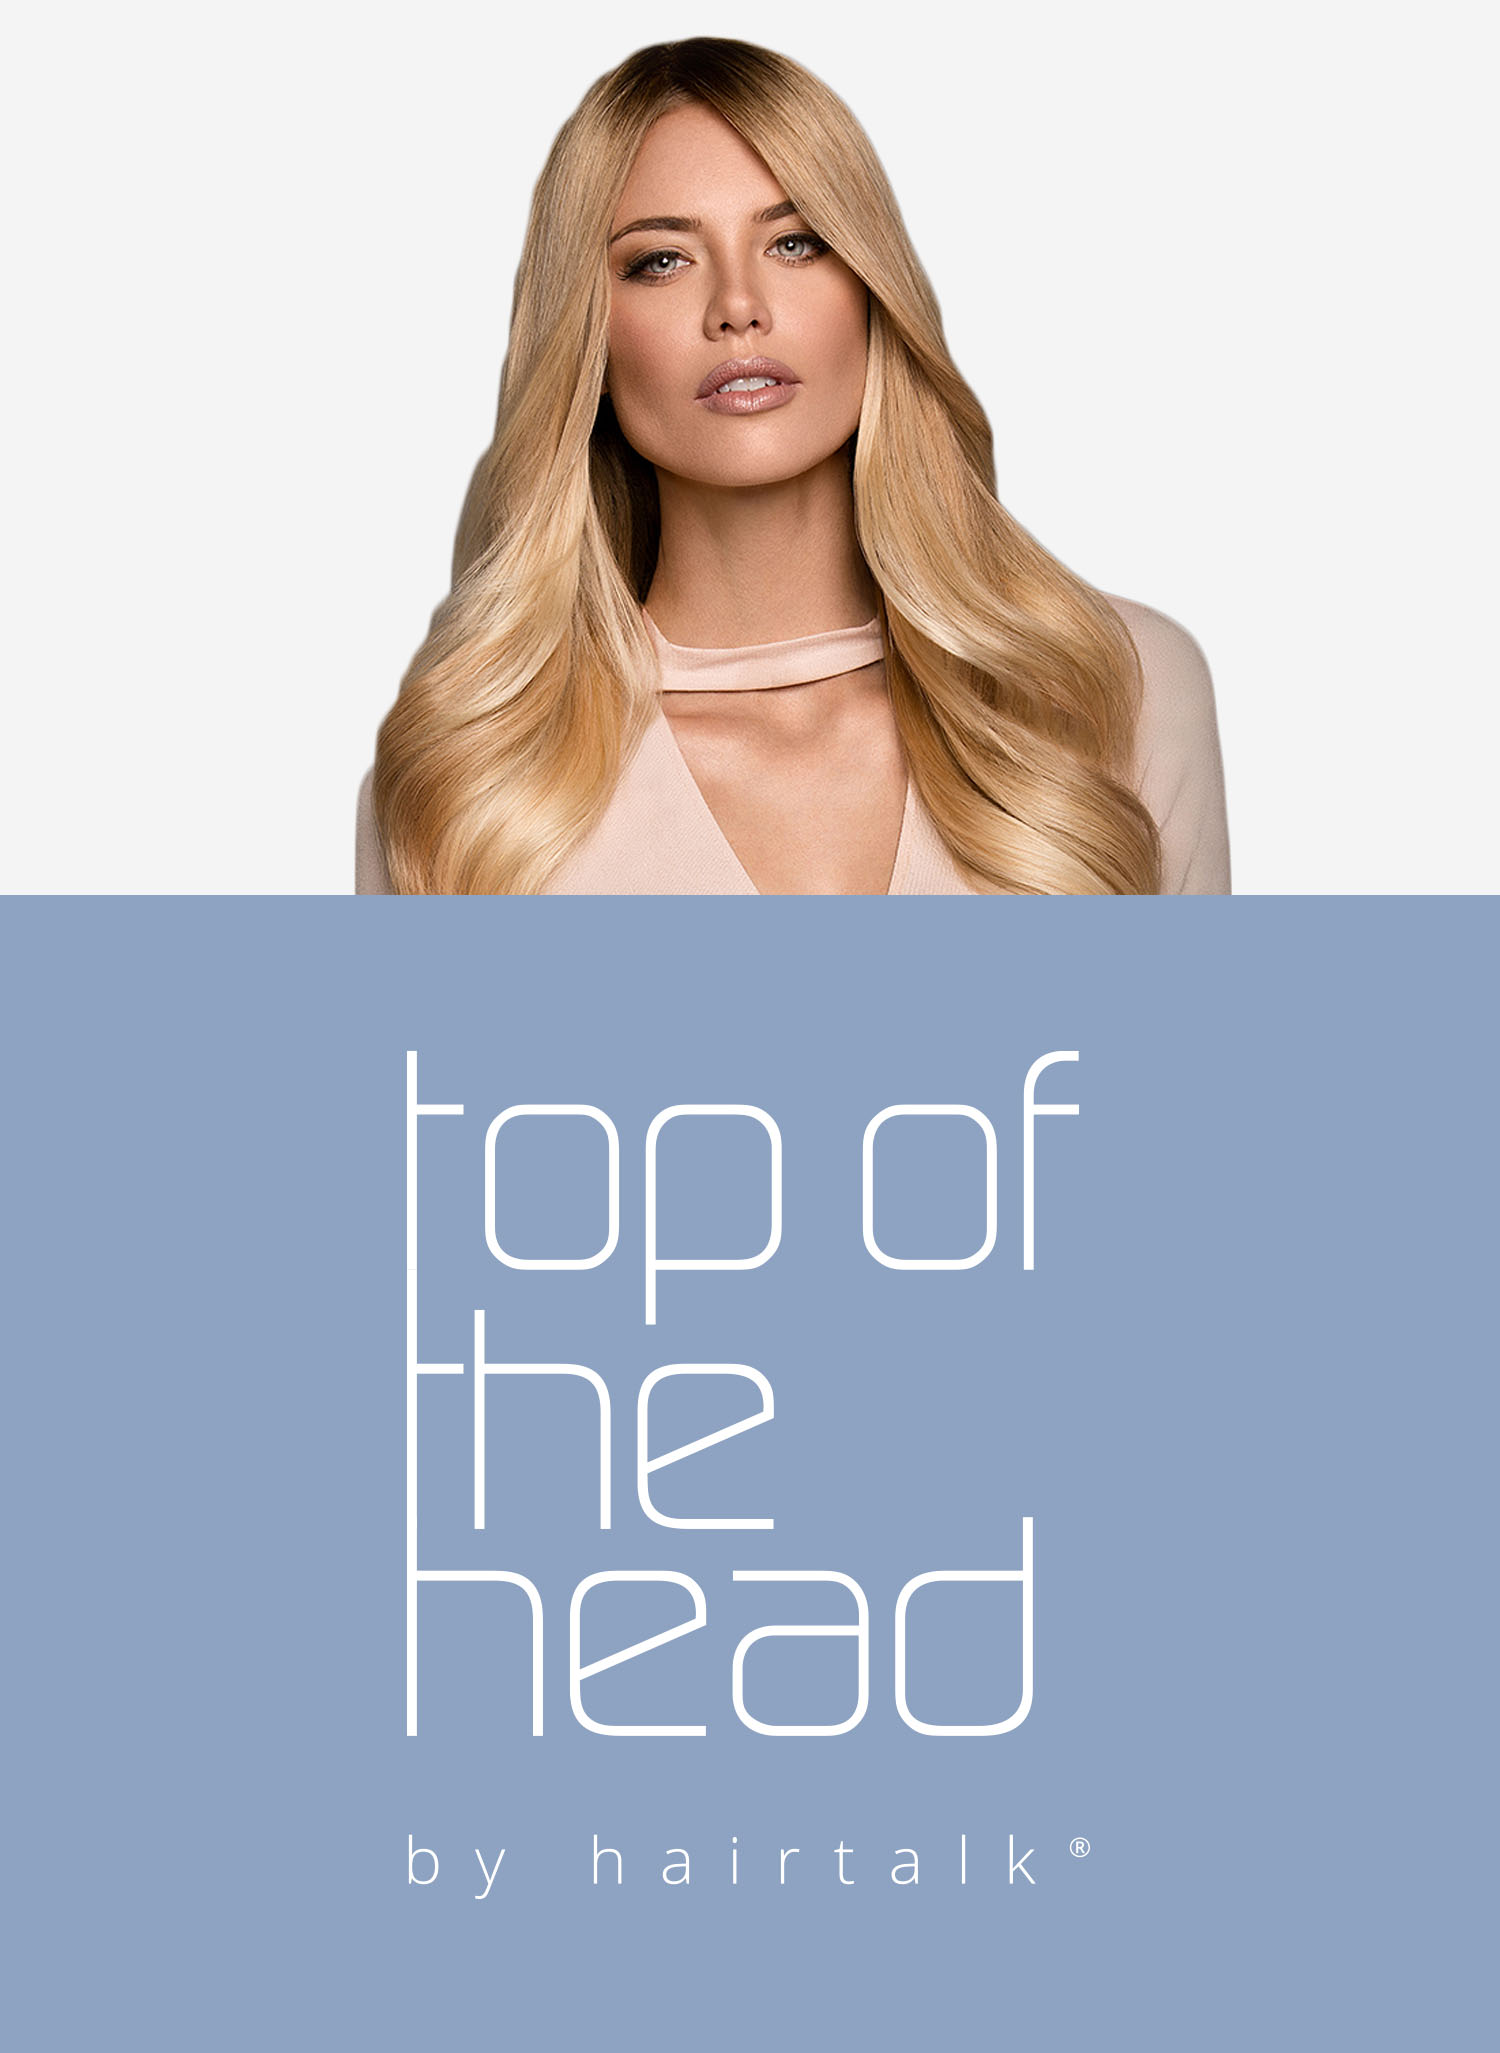 Top of Head - hairtalk®